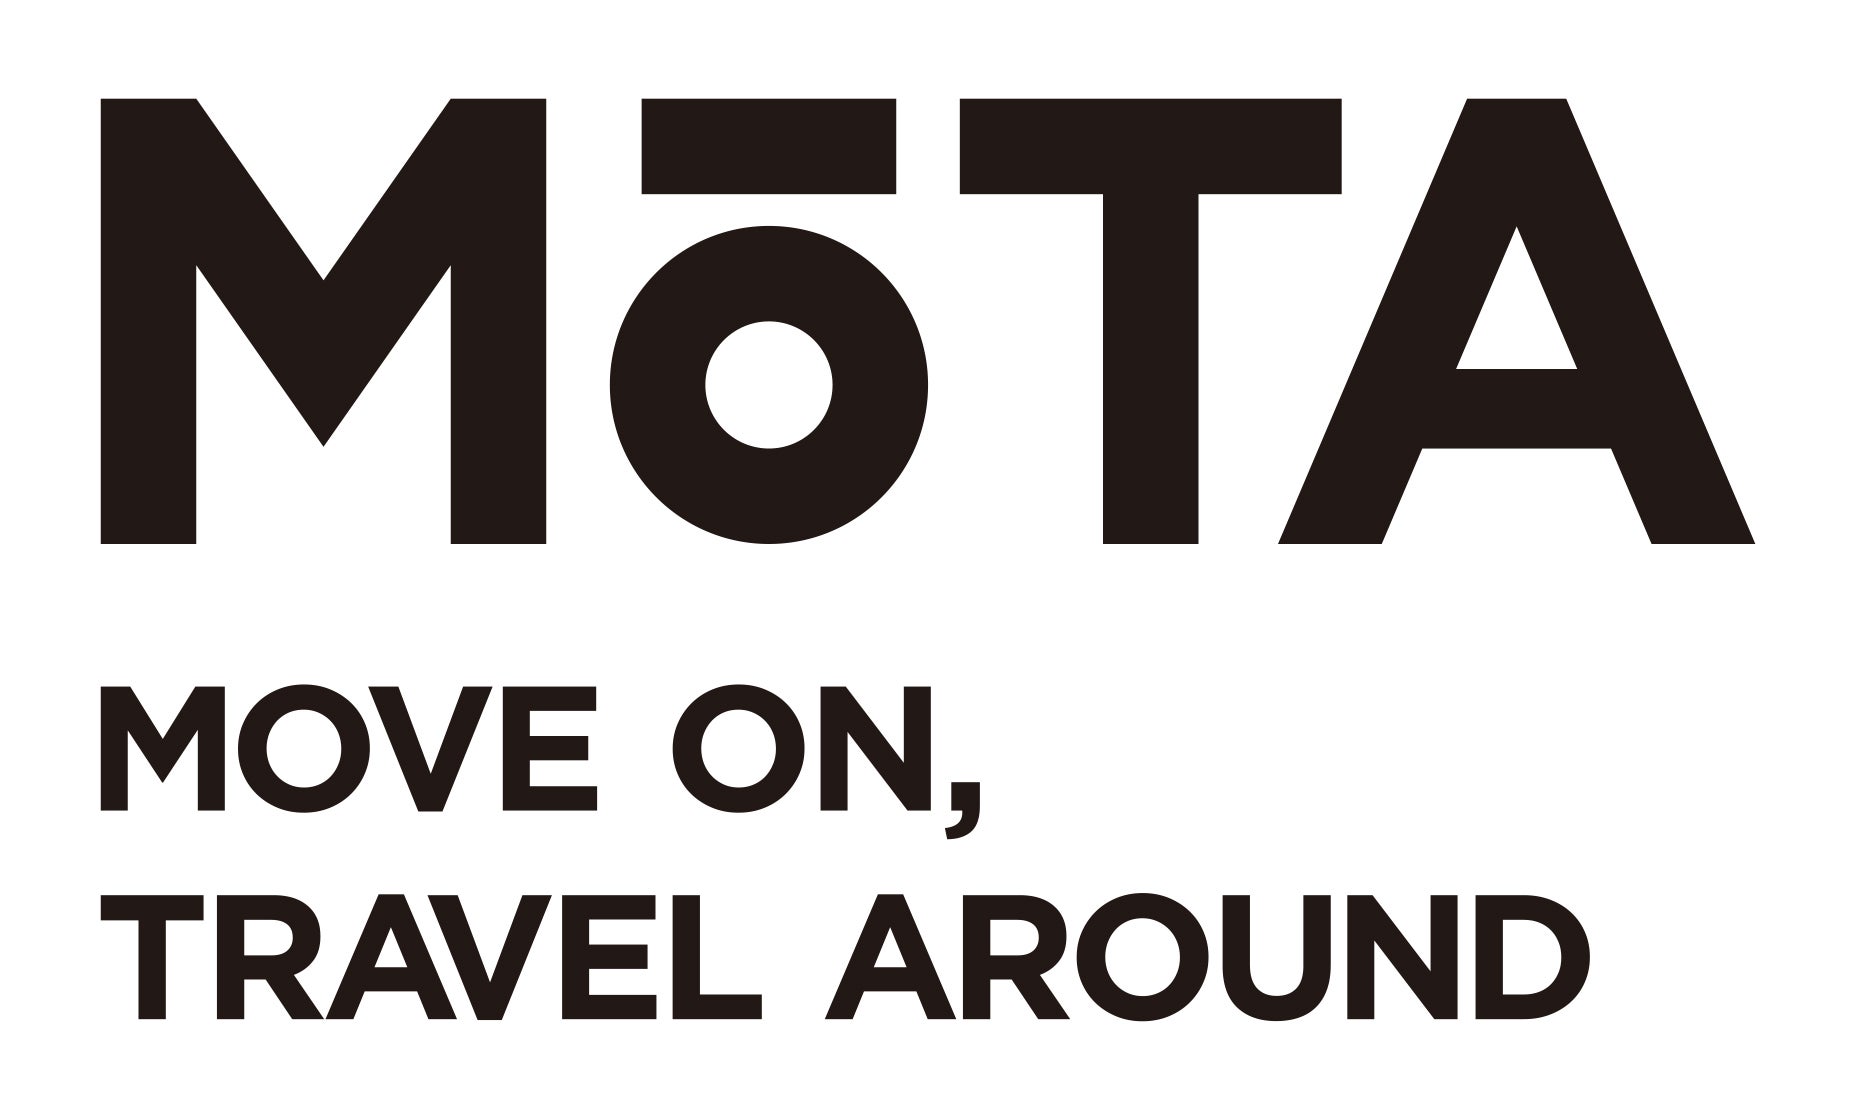 「一括車買取査定、MOTA車買取」に関する特許出願 | 株式会社MOTAのプレスリリース